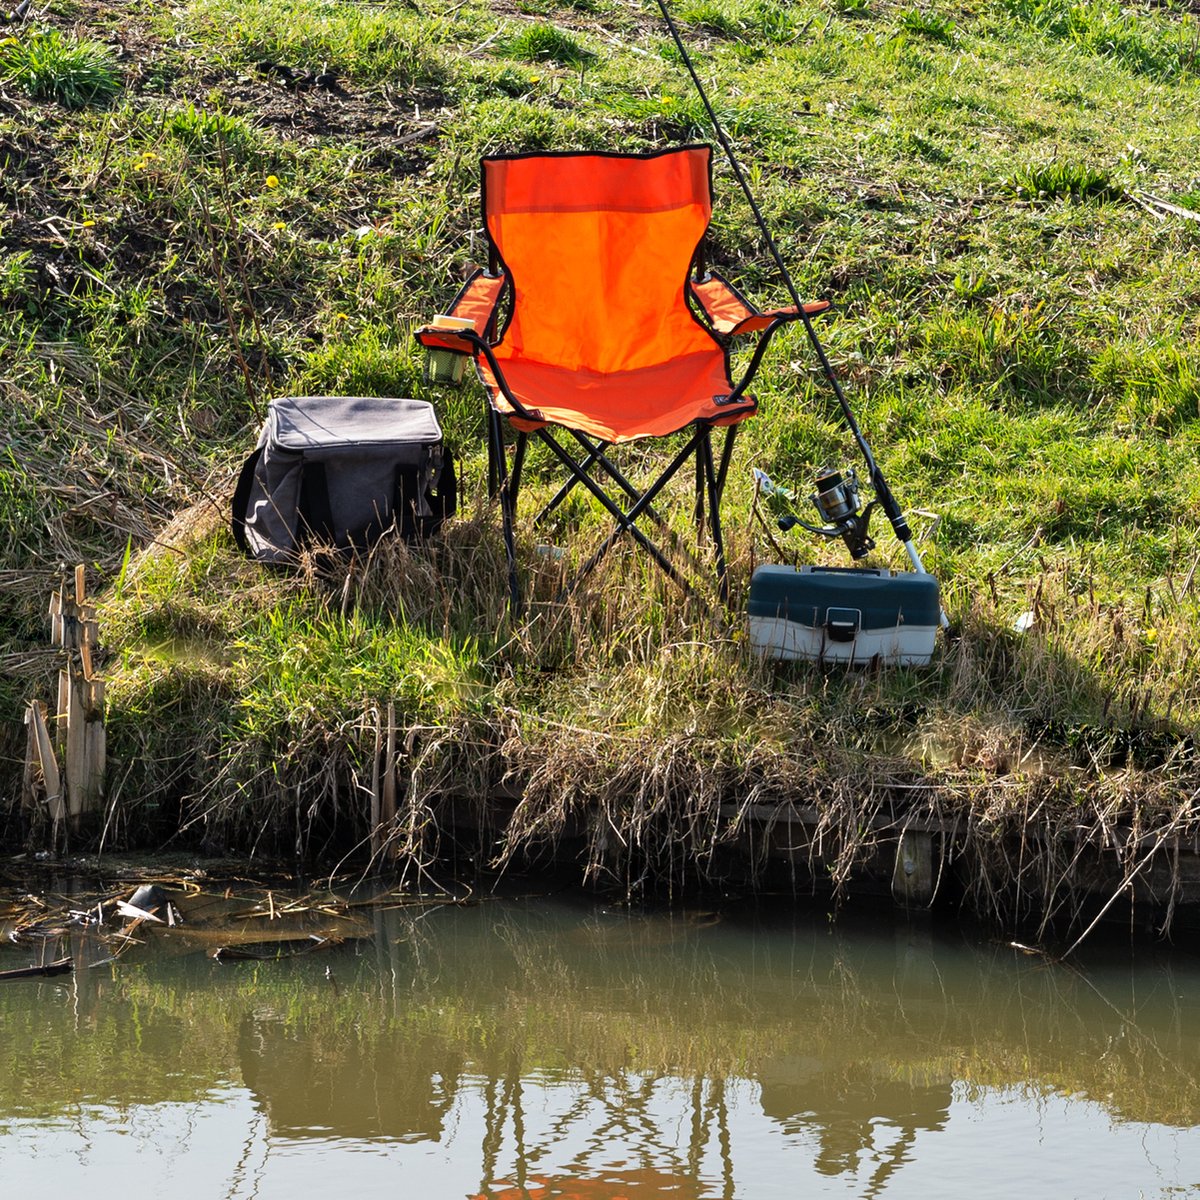 EASTWALL Chaise de Camping Pliante Orange